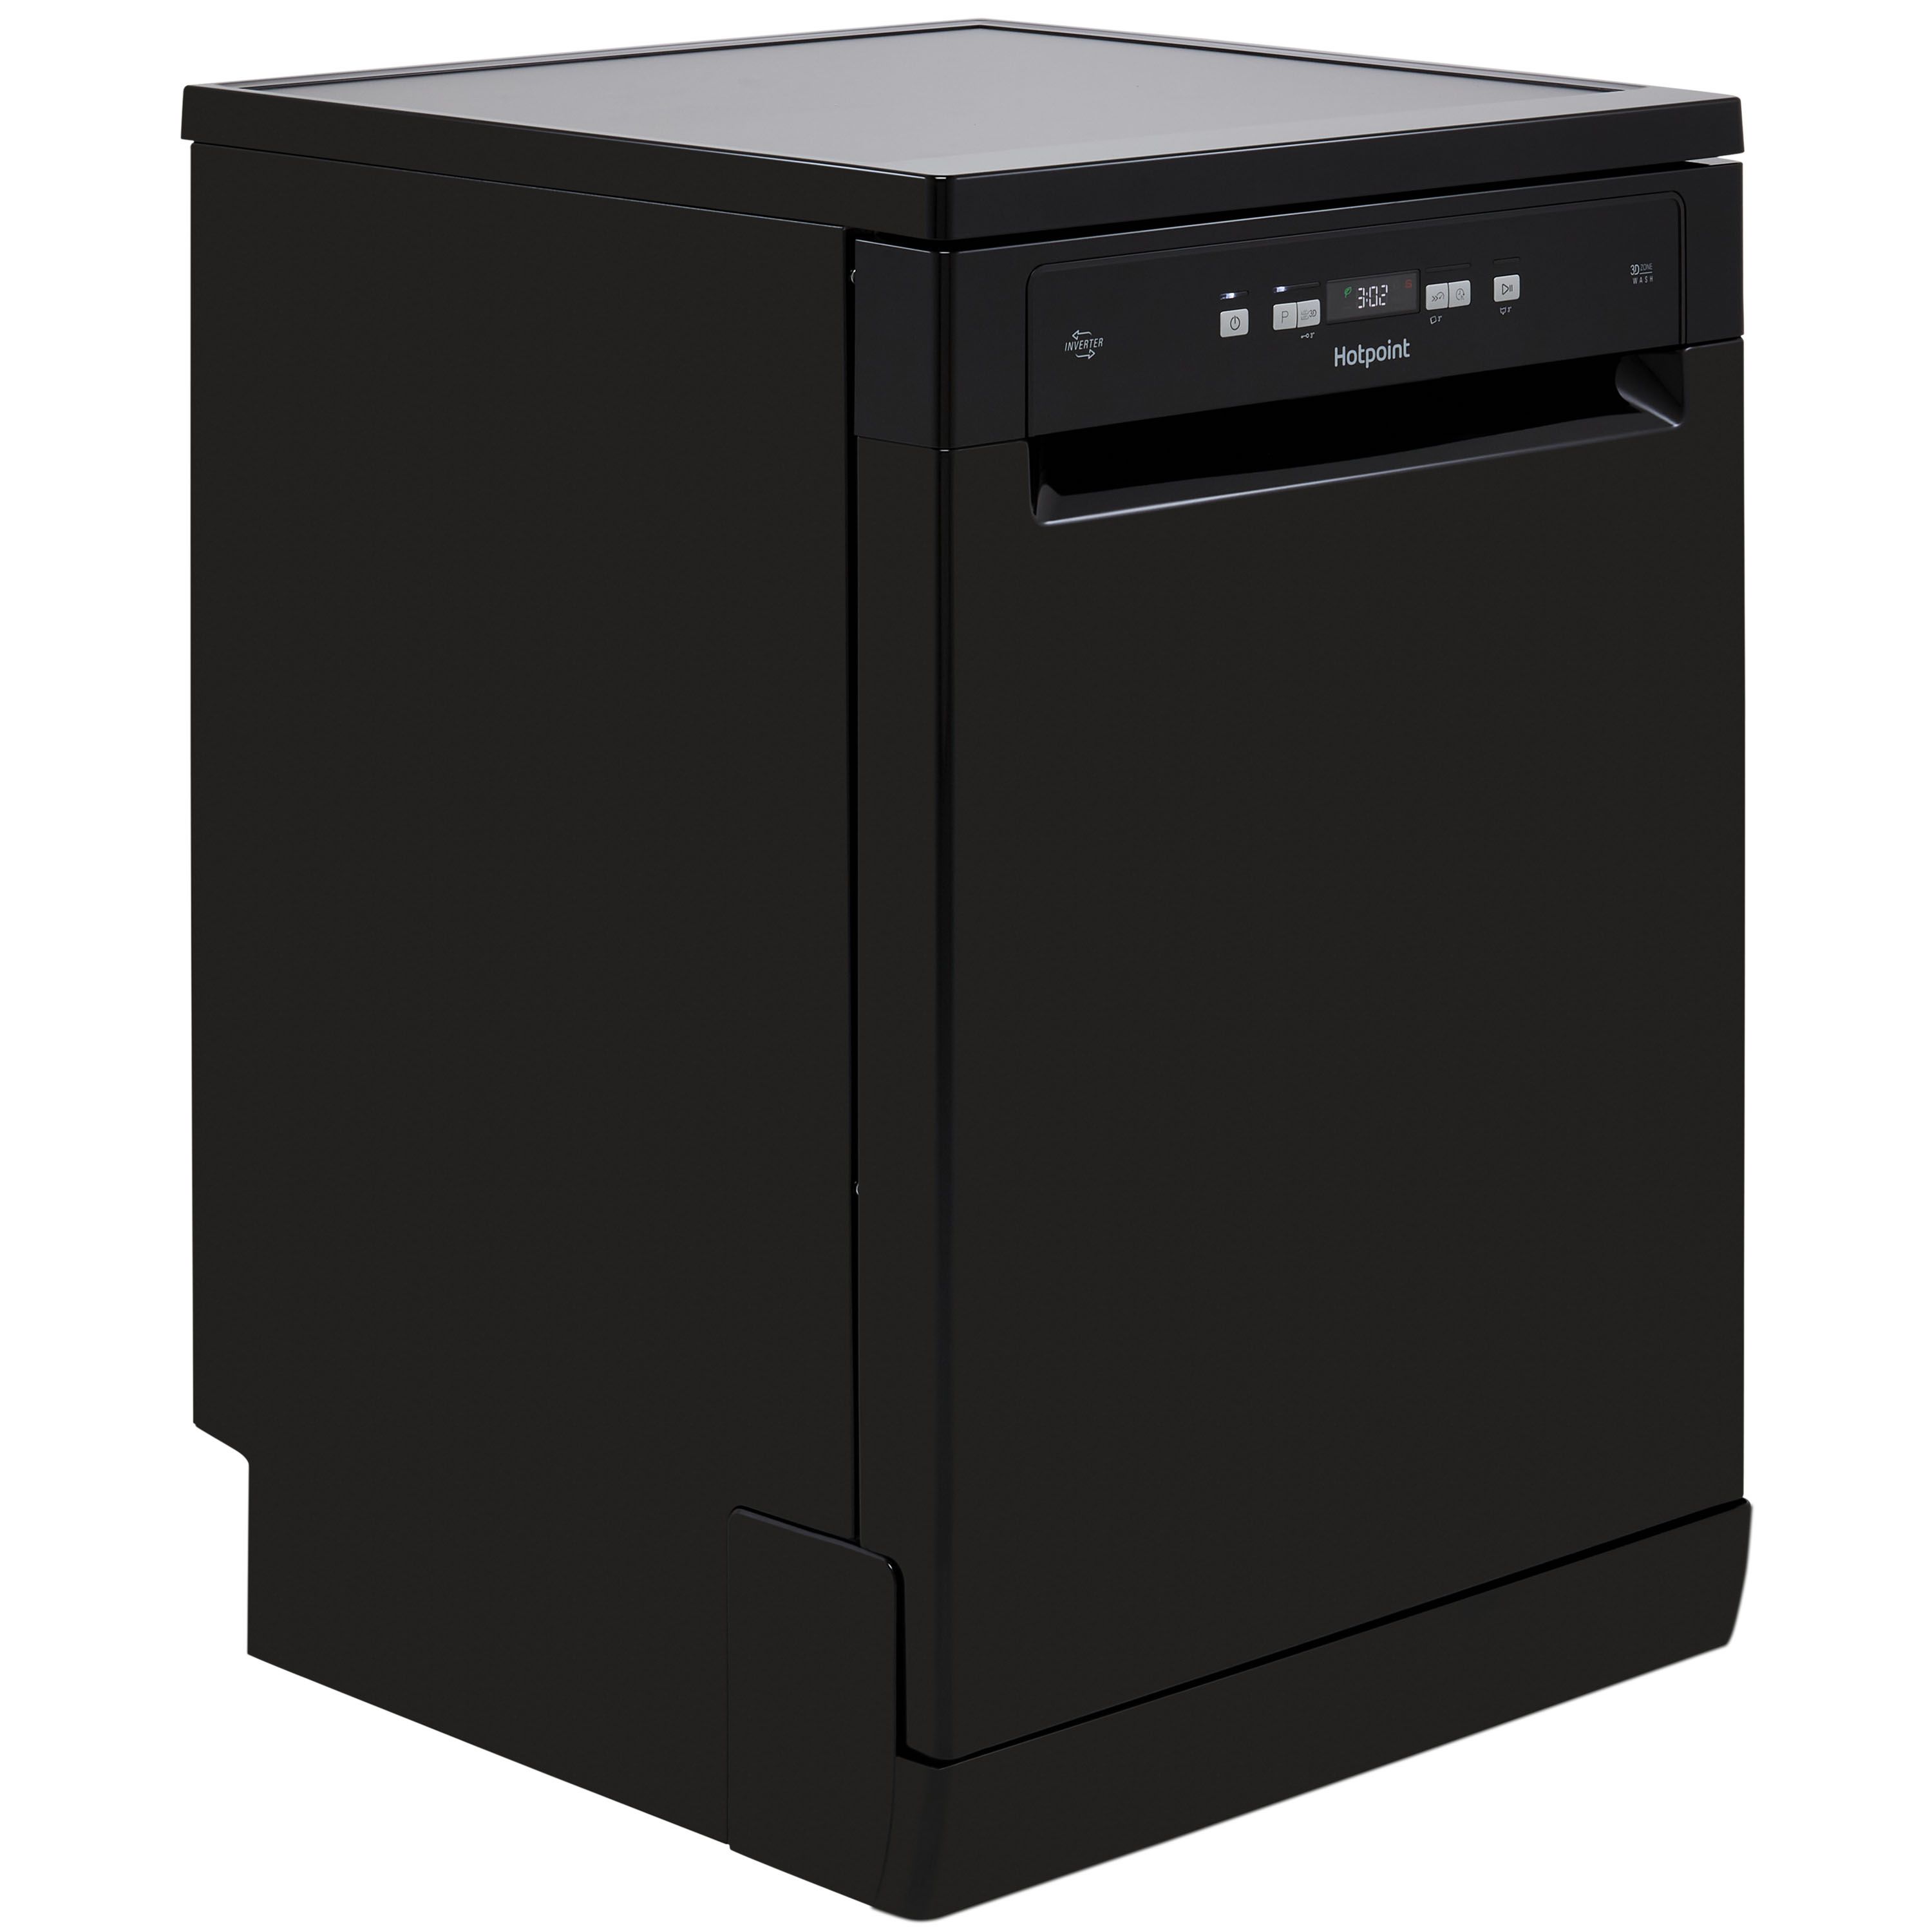 Hotpoint HFC3C26WCBUK Freestanding Full size Dishwasher - Black